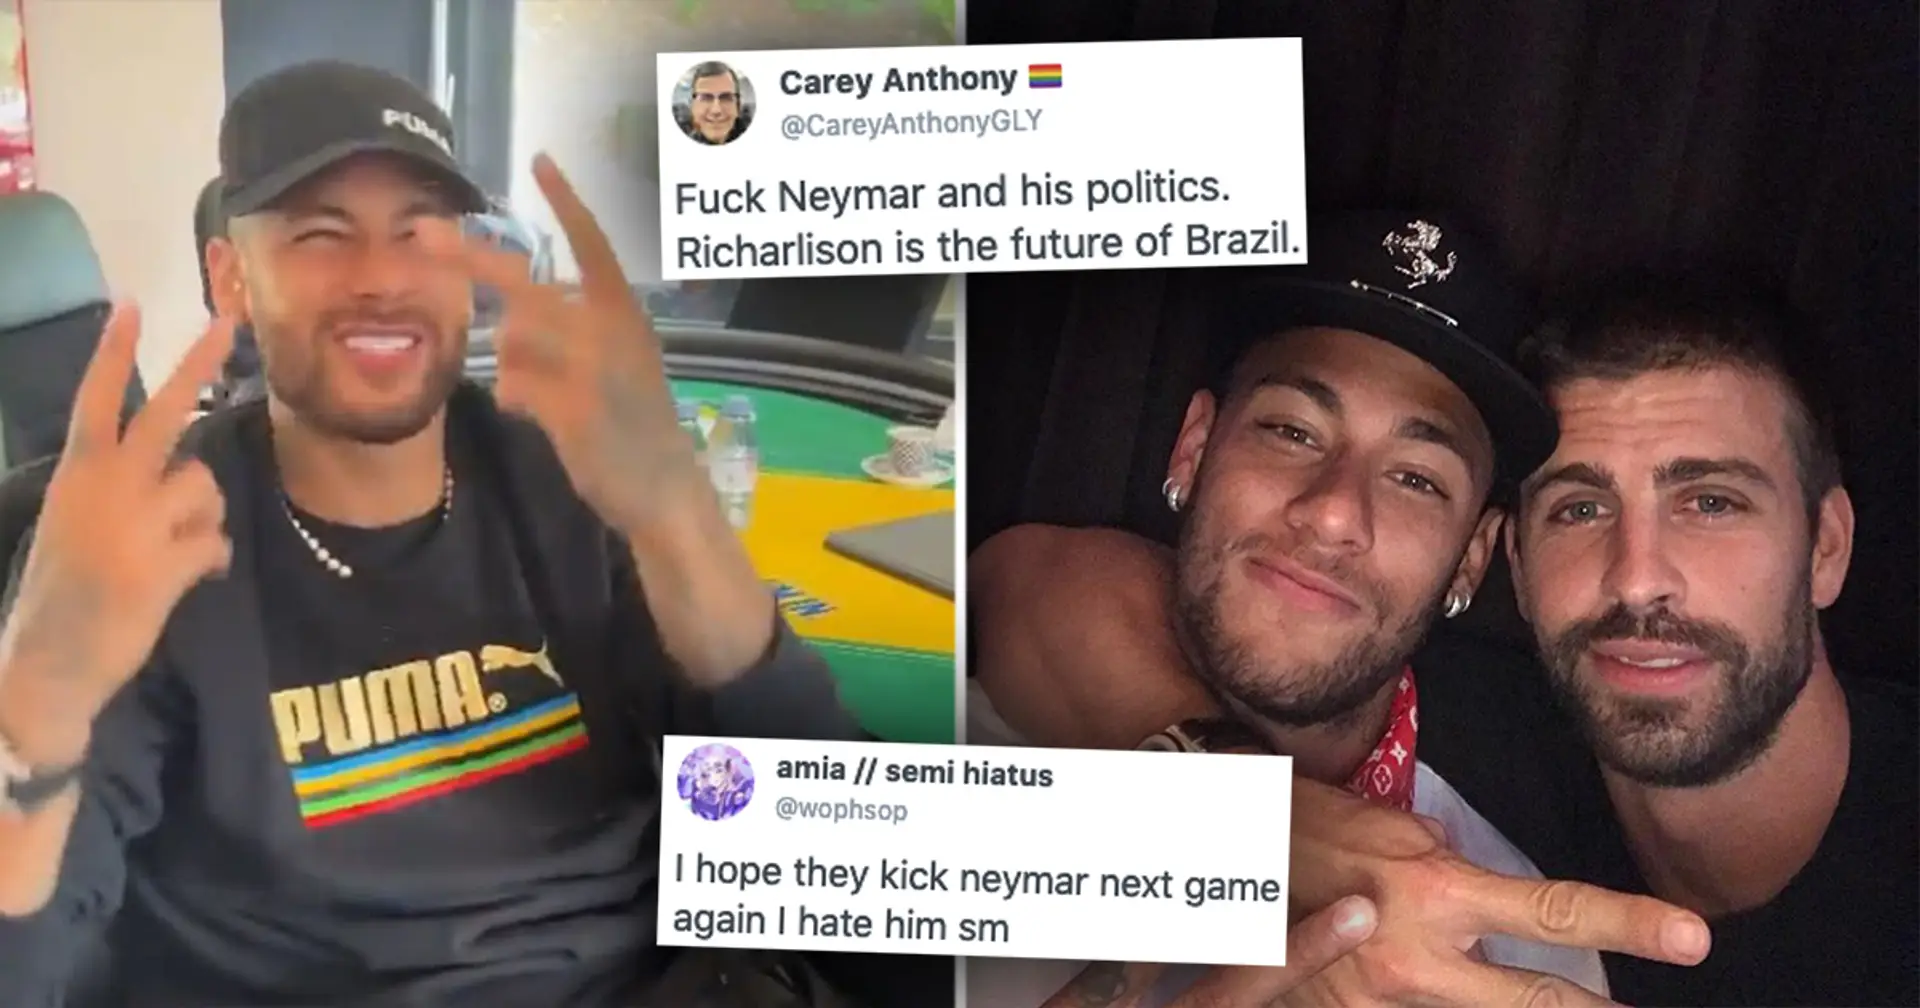 Pourquoi les fans brésiliens critiquent-ils vivement Neymar ? Cela a-t-il un rapport avec le Barça ? Réponse